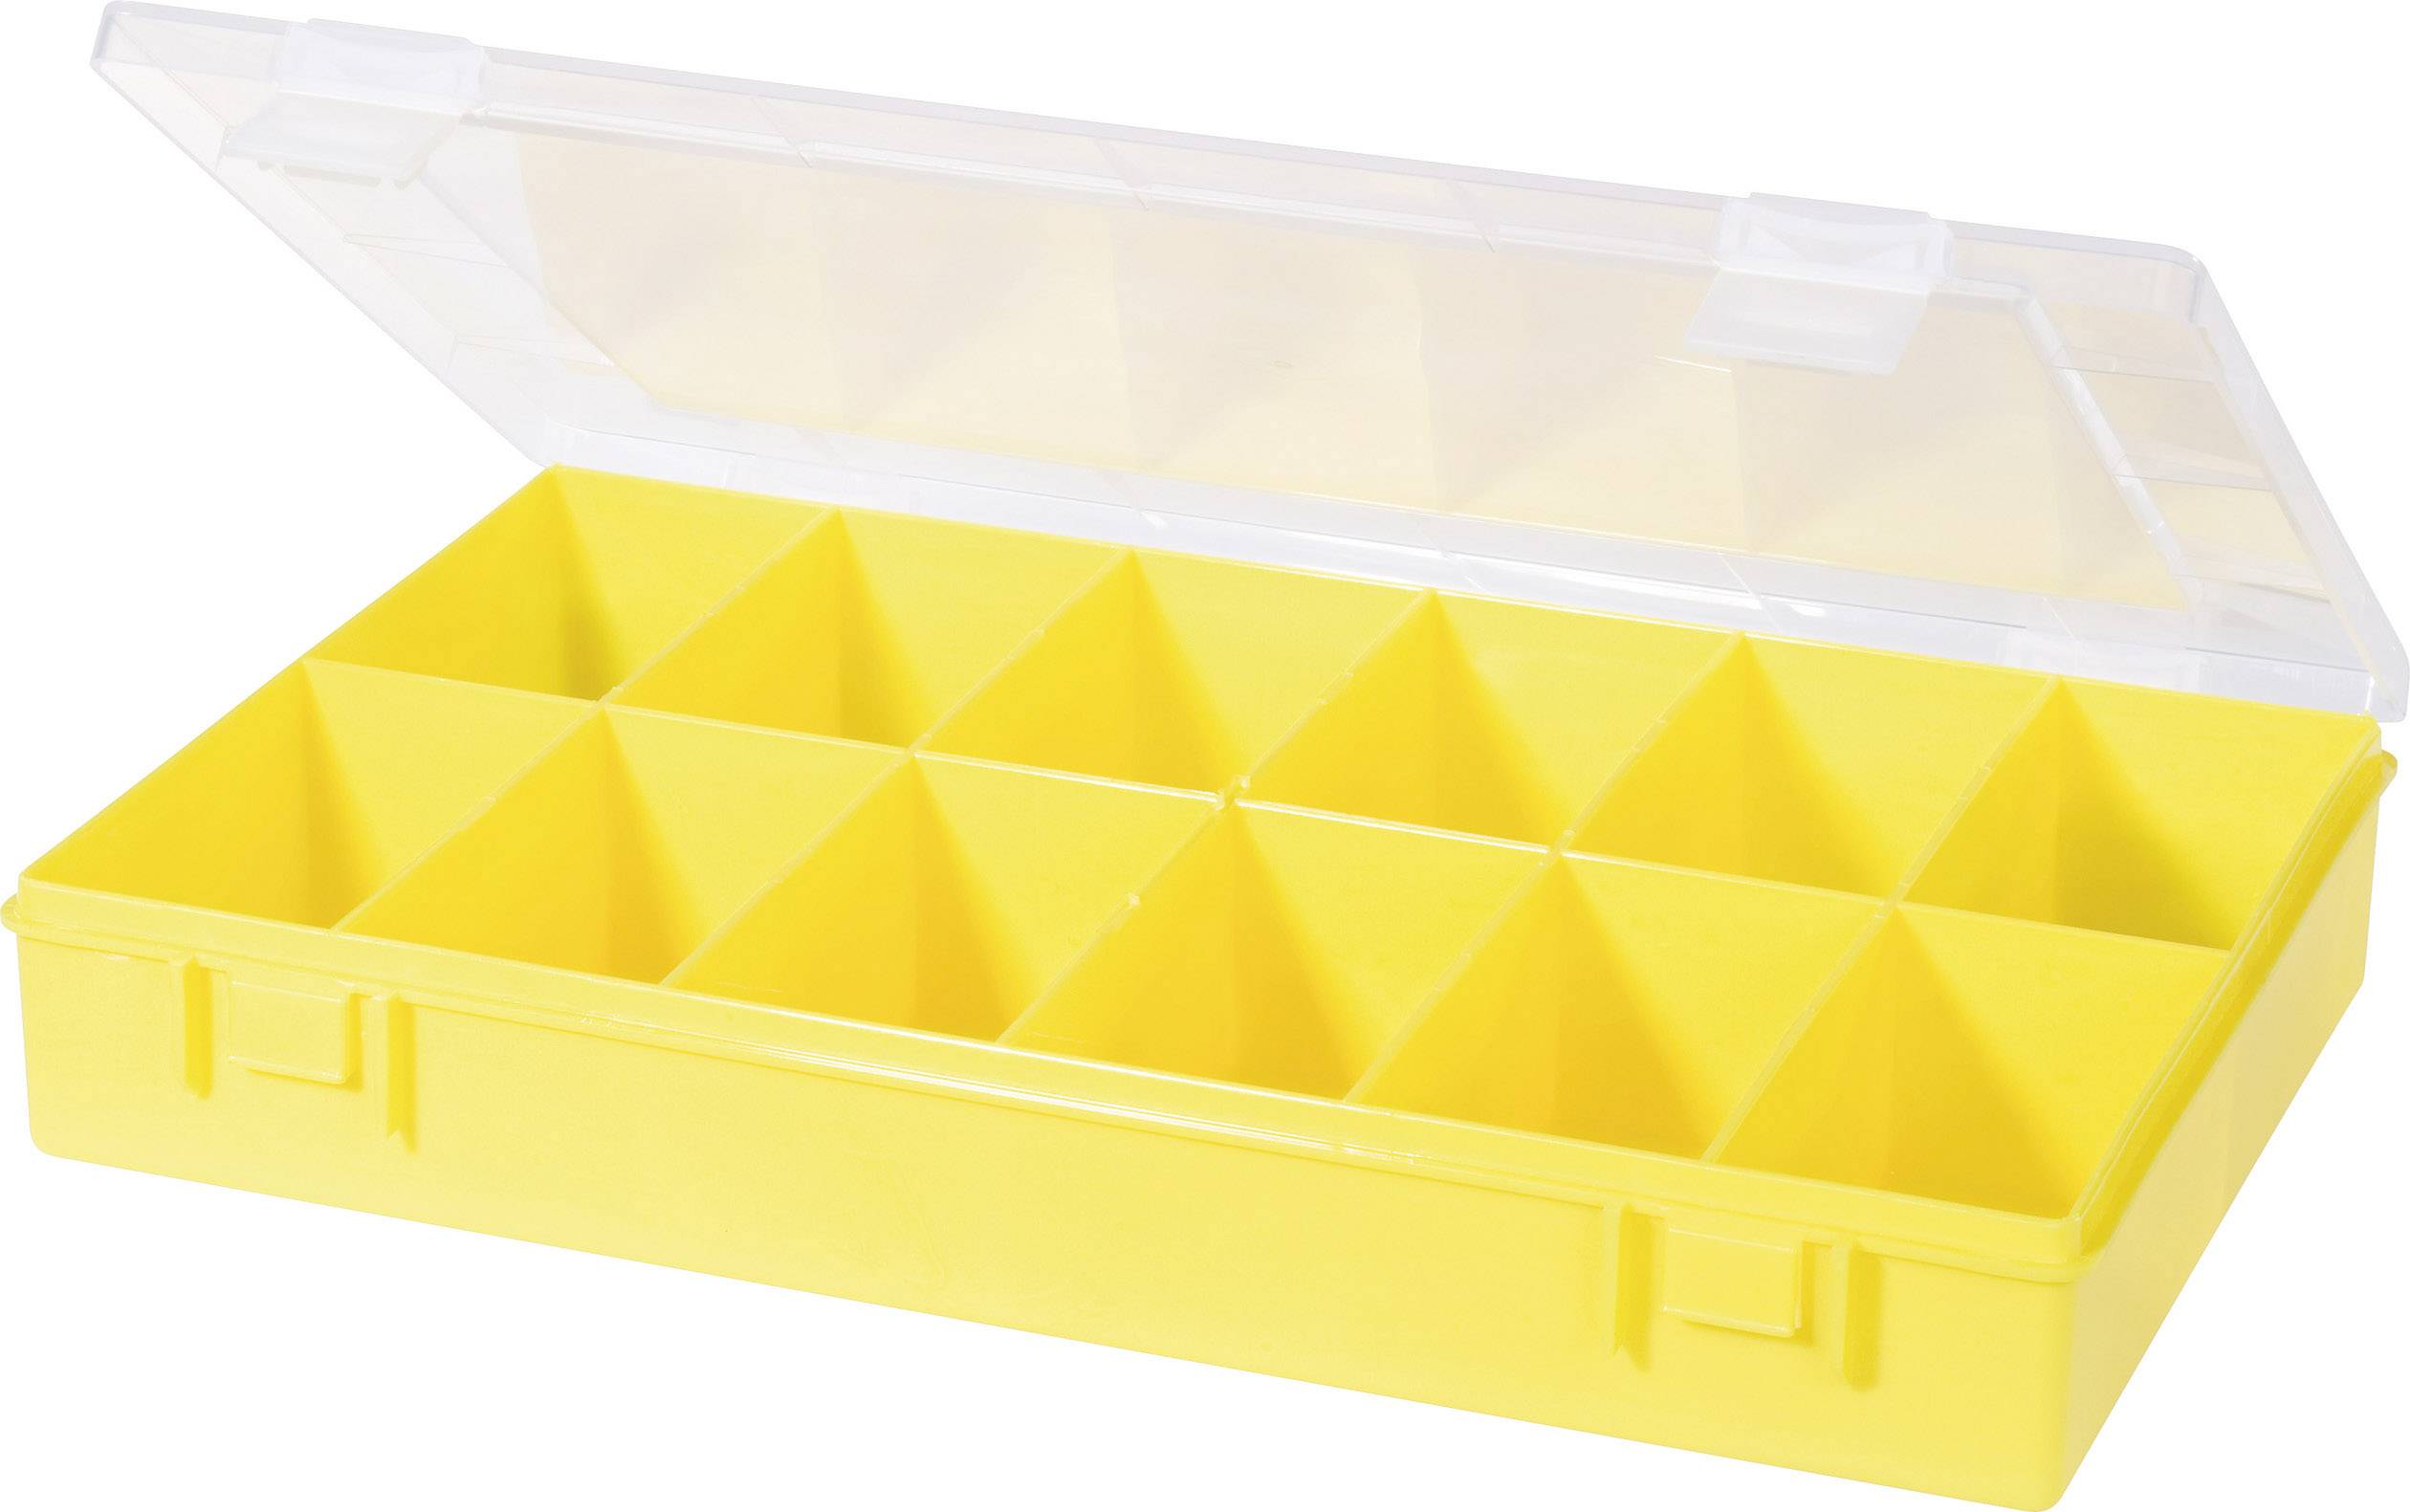 Made in Germany hünersdorff Sortimentskasten: stabile Sortierbox Sortierkasten-Maße: T170 x B250 x H46 mm 12 Fächer gelb PS mit fester Fachaufteilung